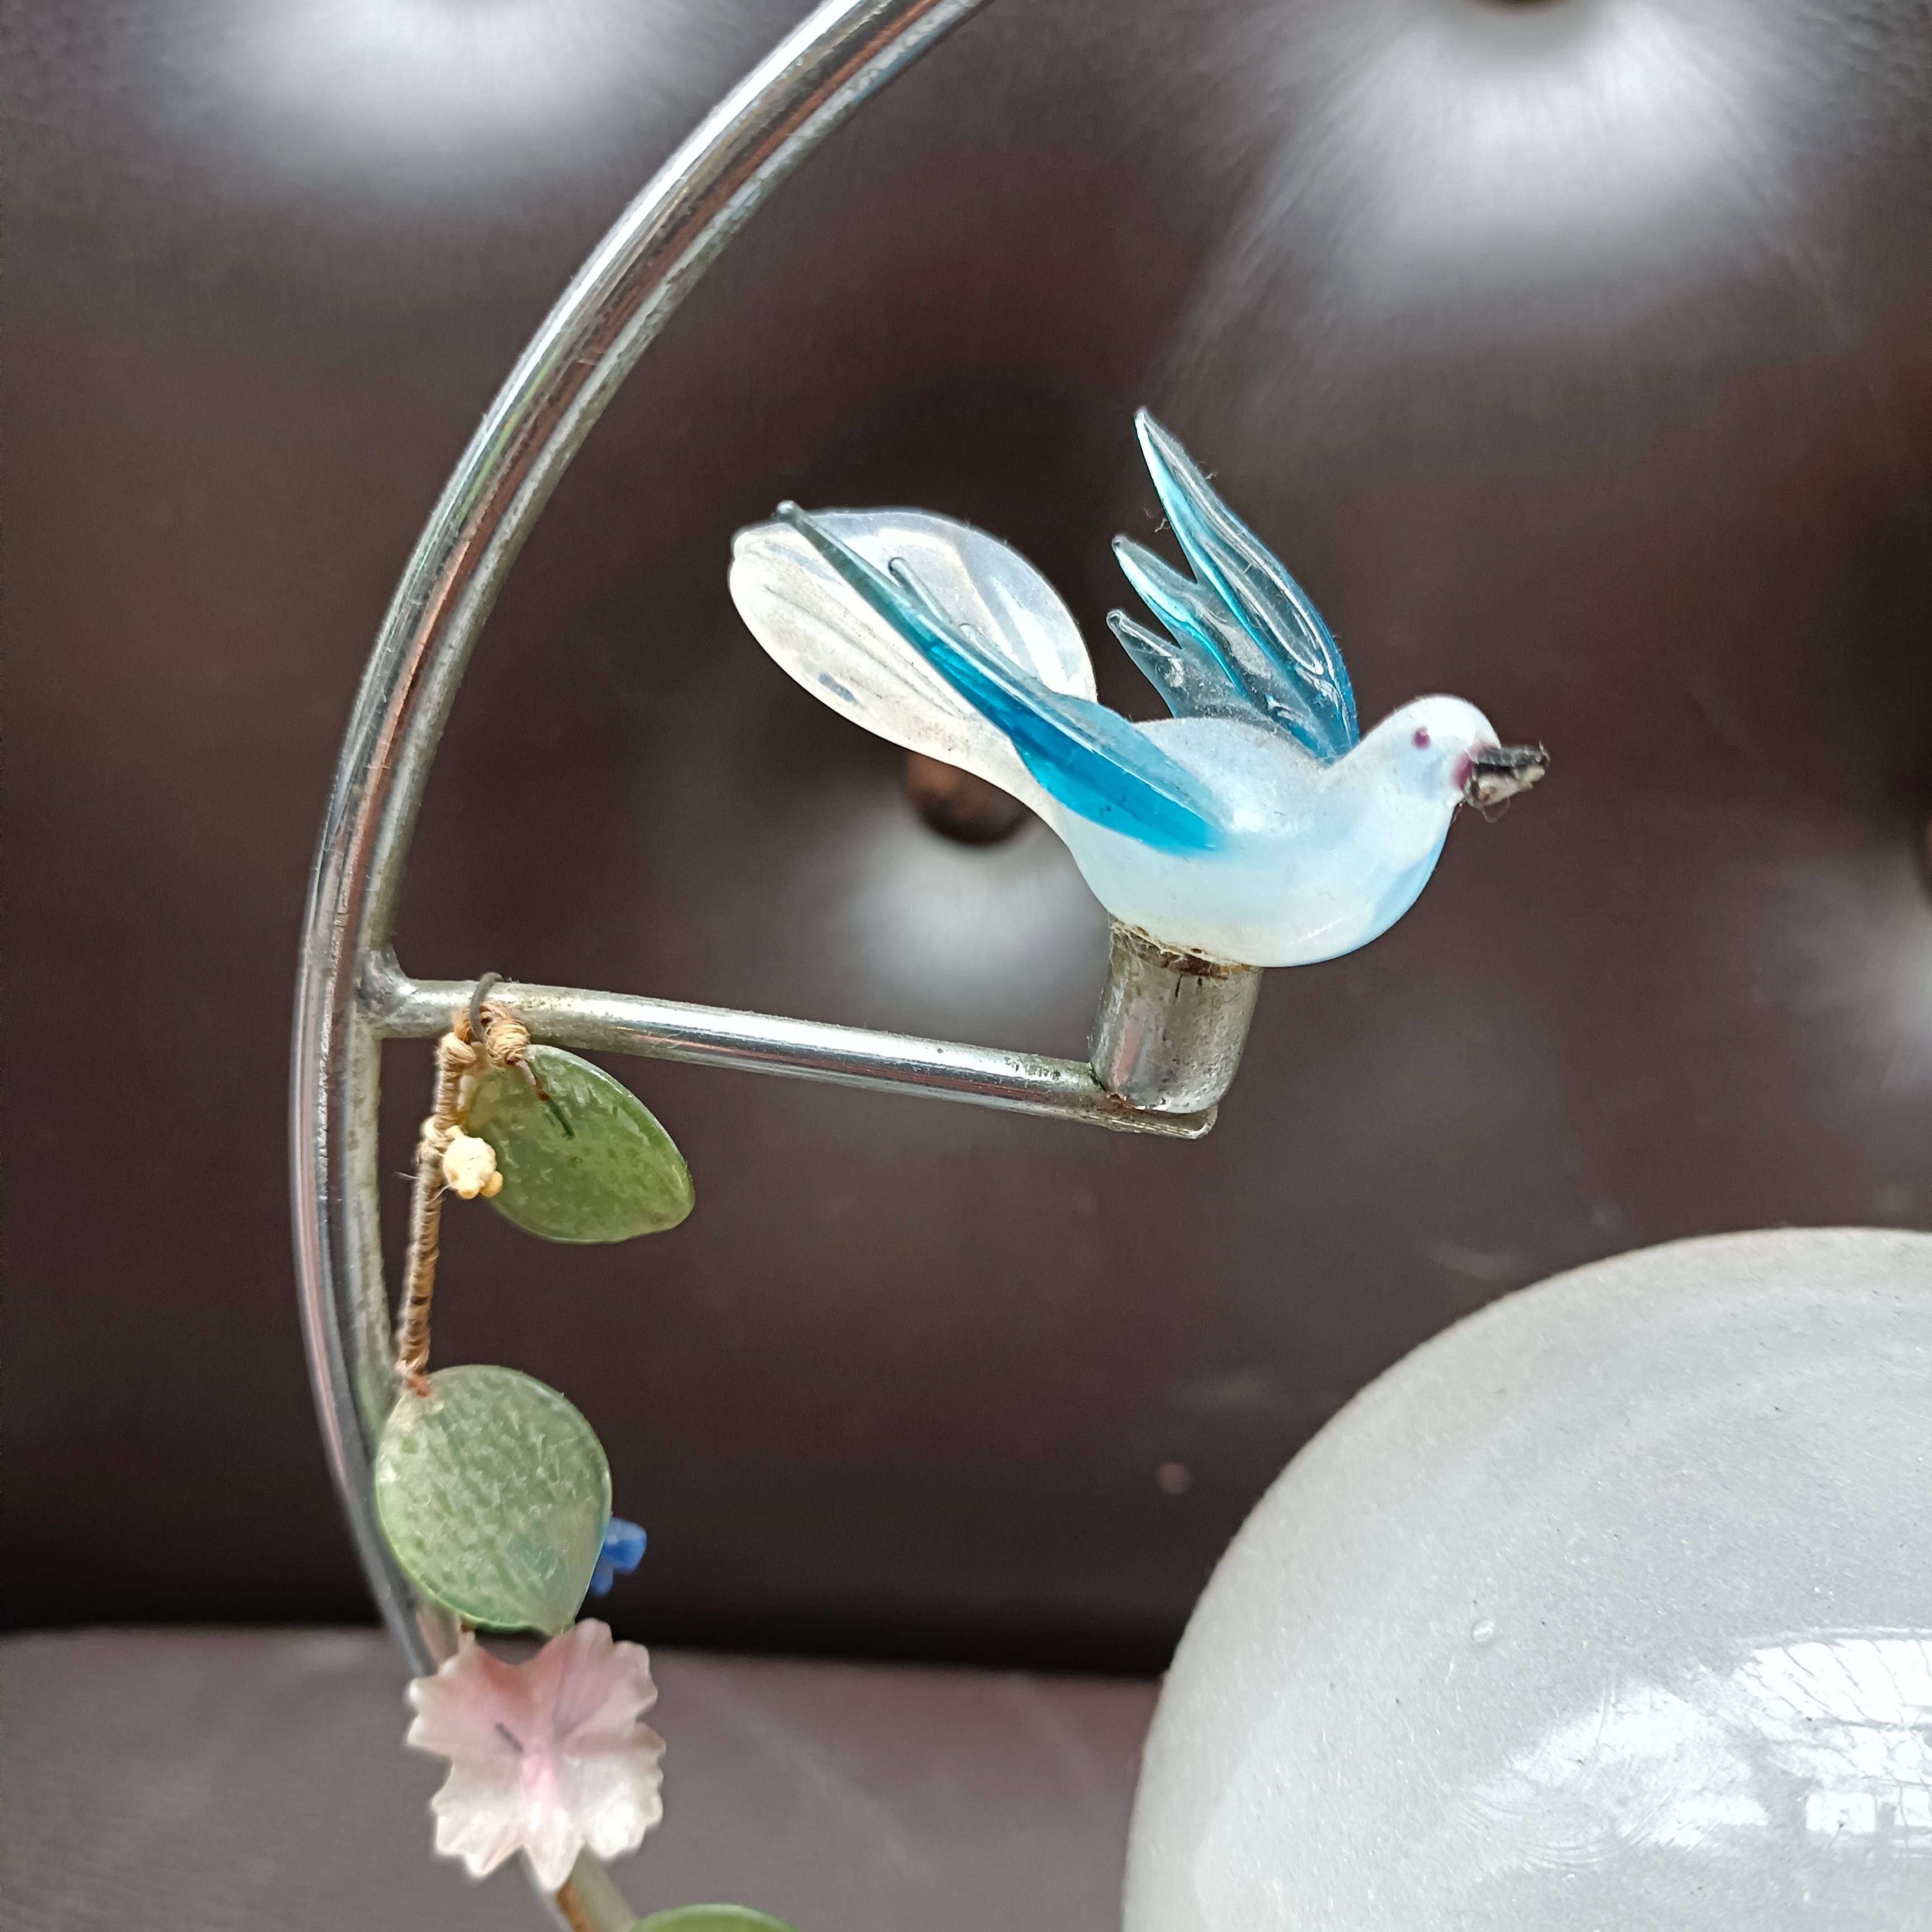 Lampe à poser veilleuse : globe en verre et oiseaux sur cercle en métal -  Début de Série